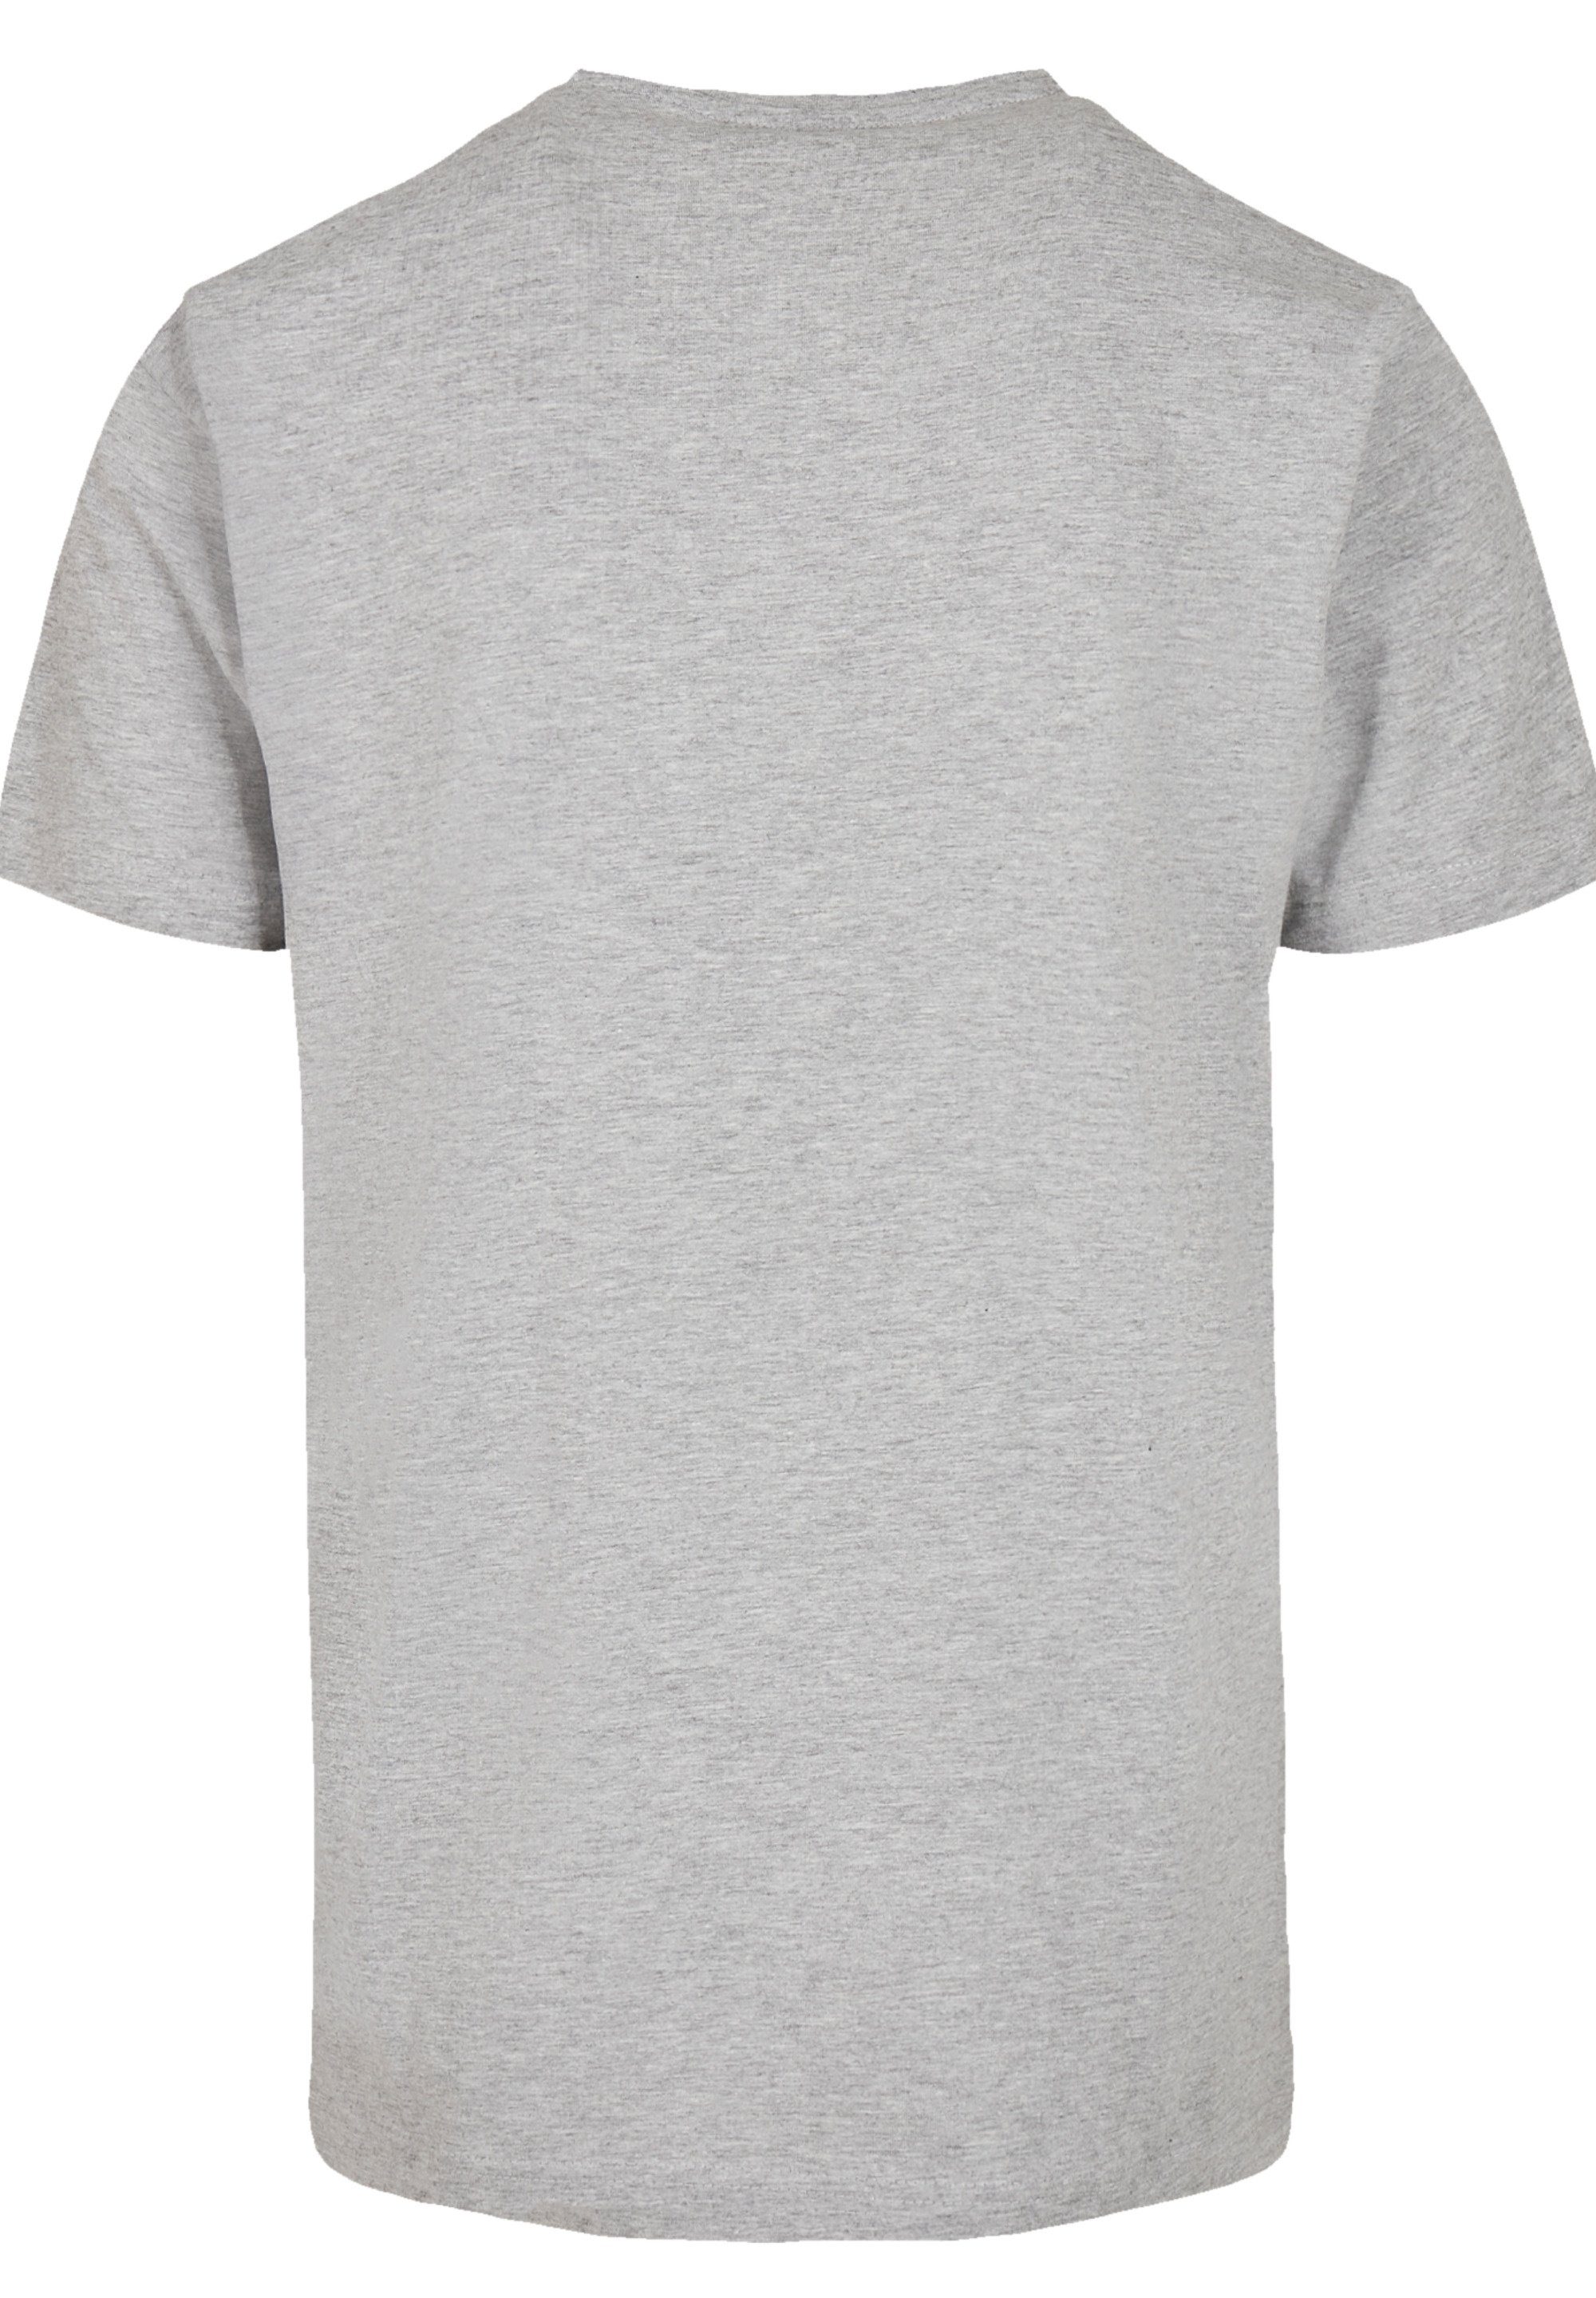 Print The T-Shirt F4NT4STIC grey heather Killers